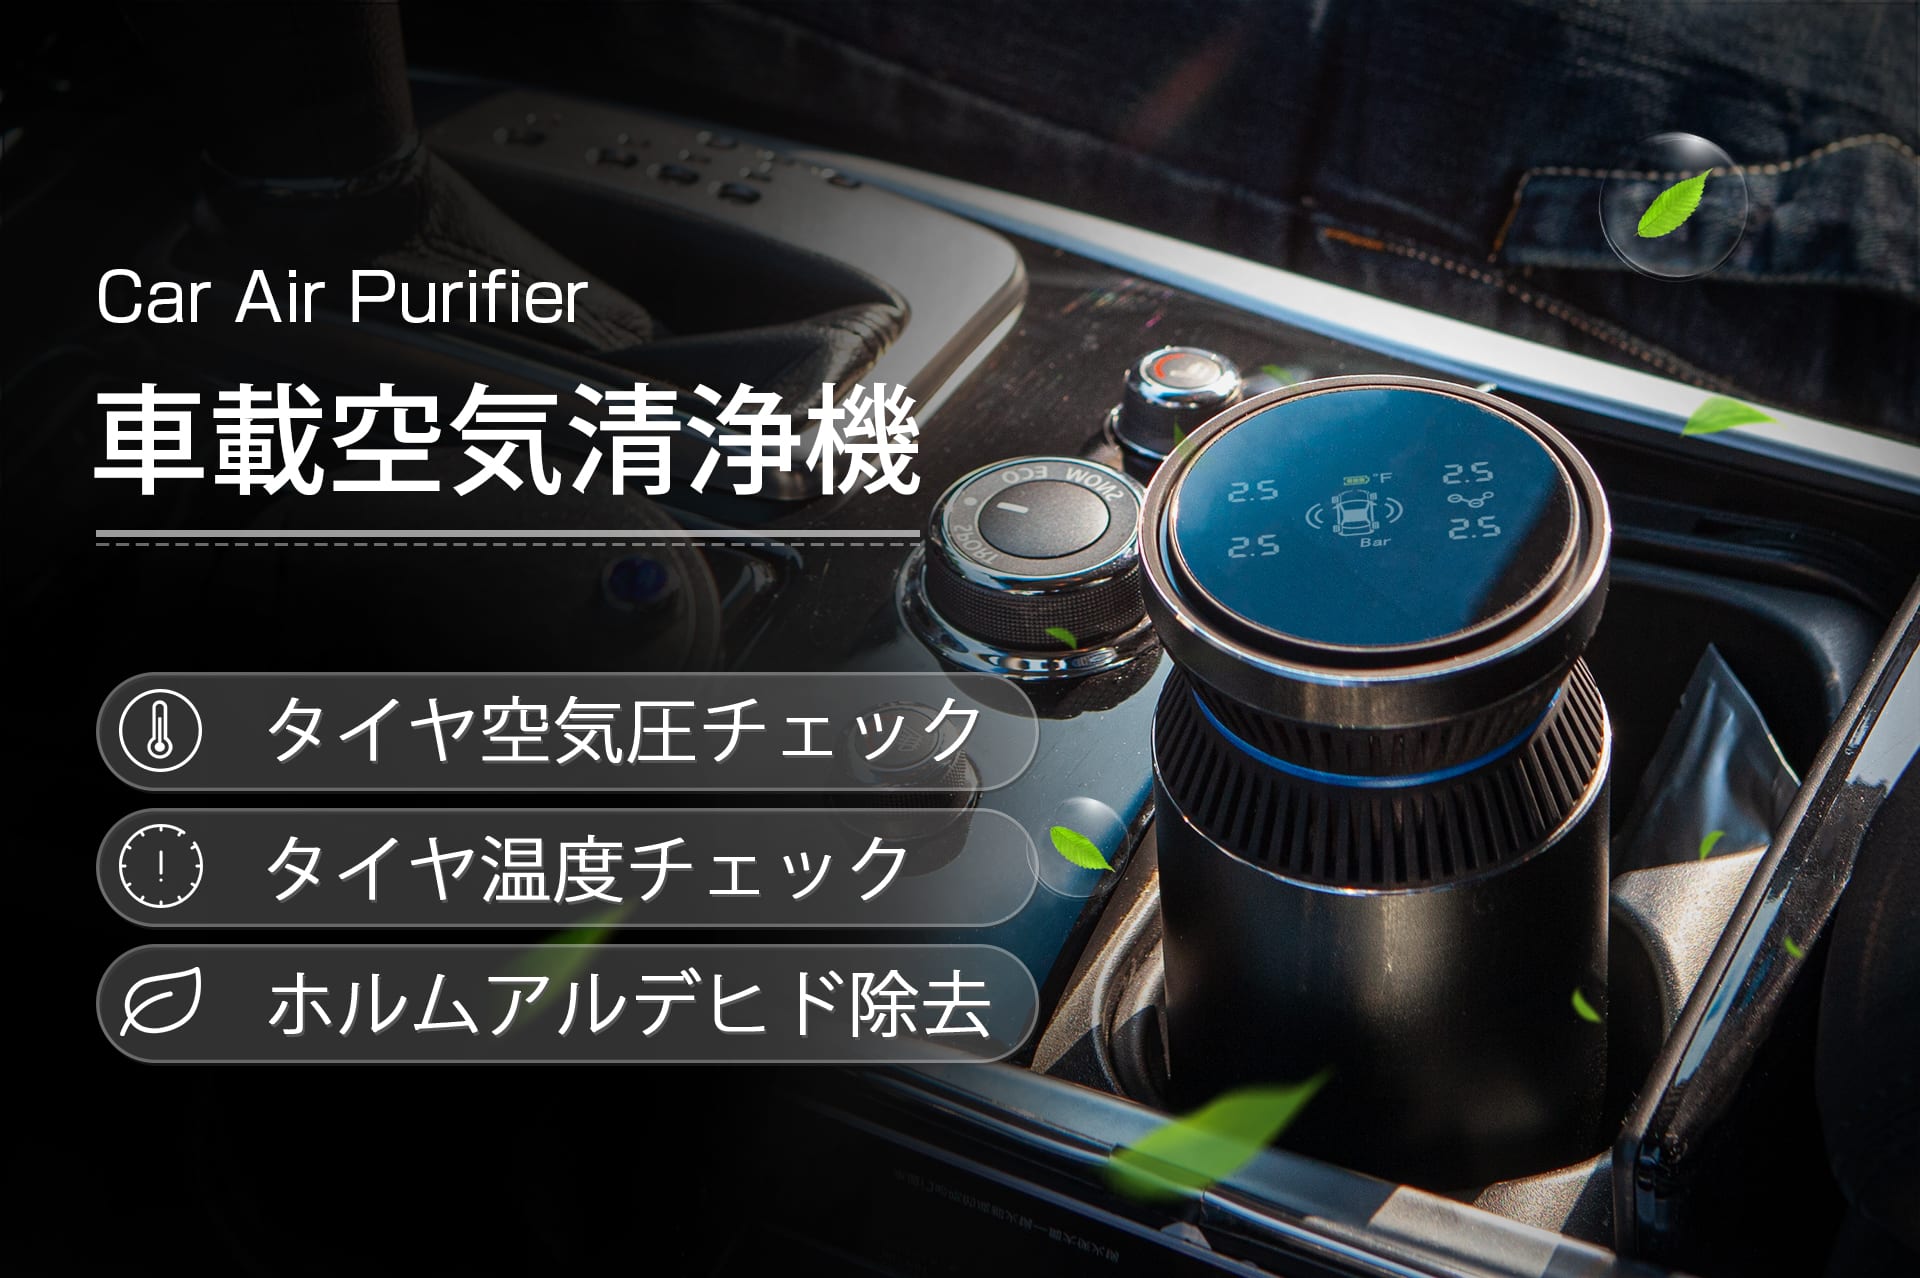 タイヤの空気圧チェックも可能なスマート車載空気清浄機 Car Air Purifier Engadget 日本版